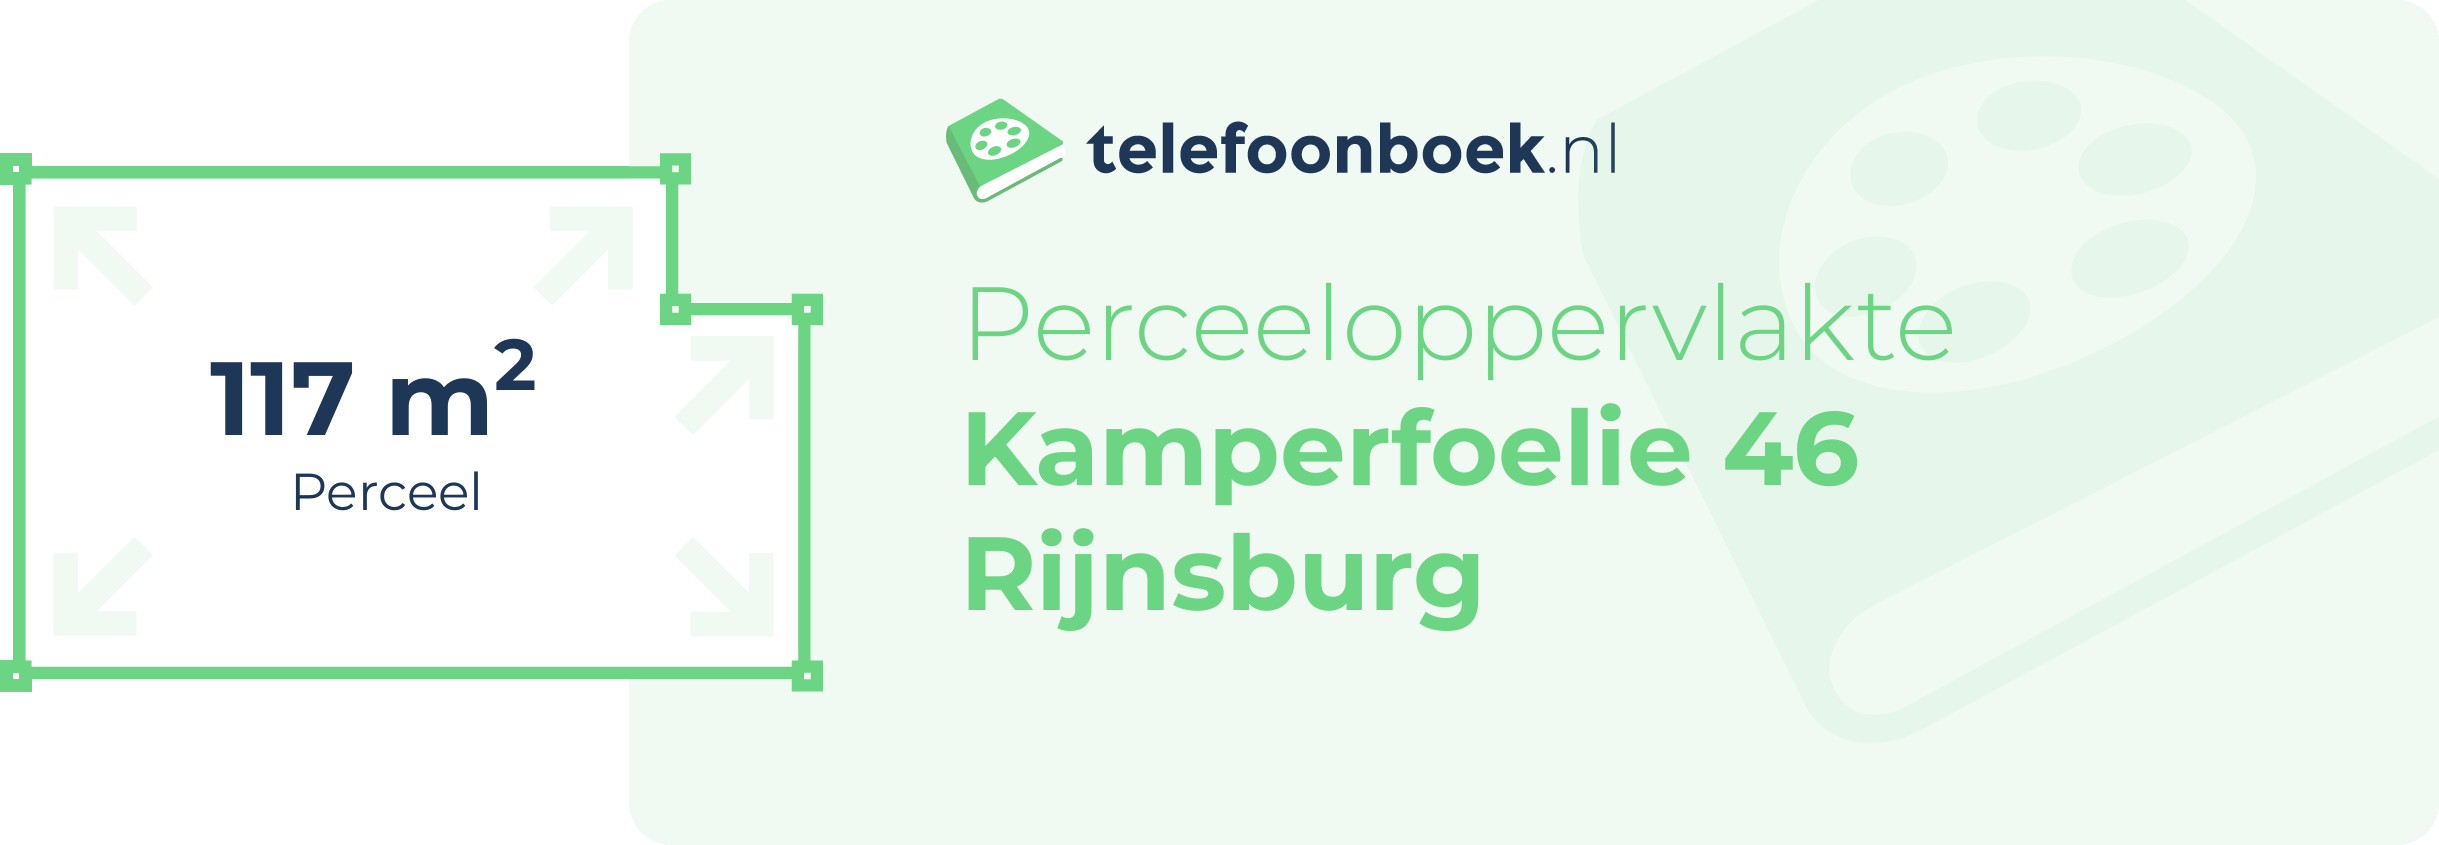 Perceeloppervlakte Kamperfoelie 46 Rijnsburg